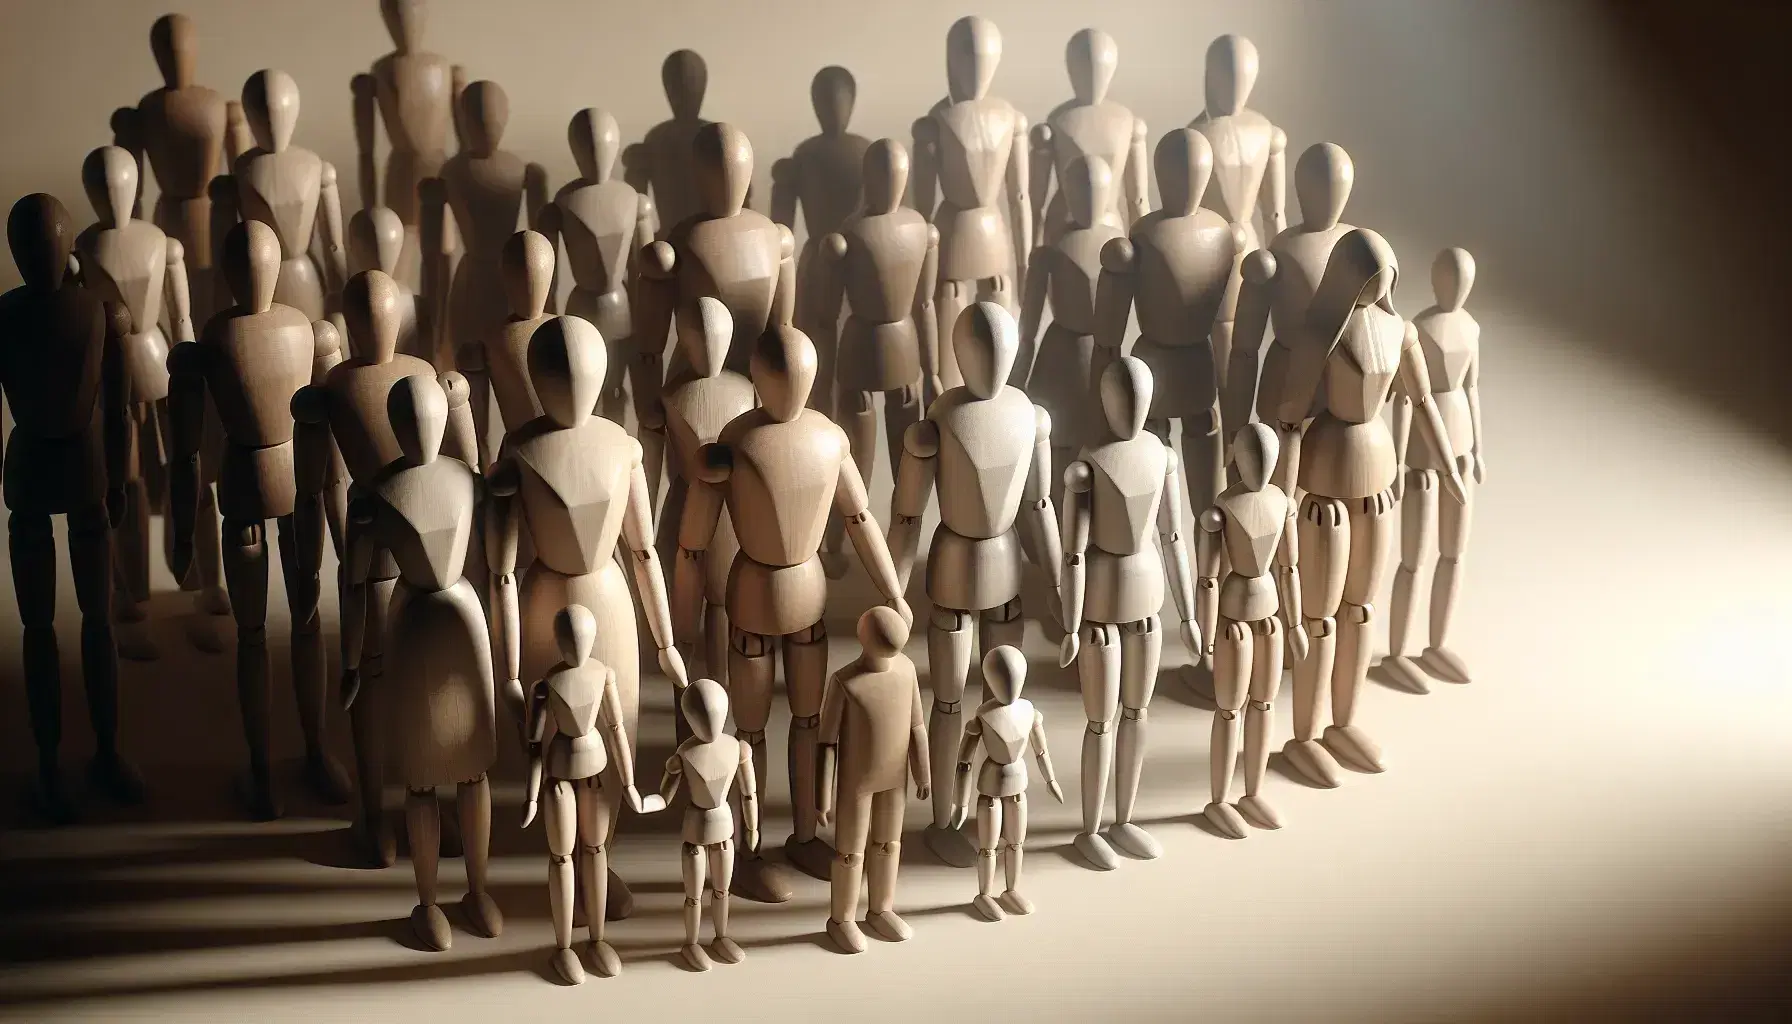 Figuras humanas de madera sin rostro representando una familia, con adultos y niños tomados de la mano y una figura aislada al fondo.